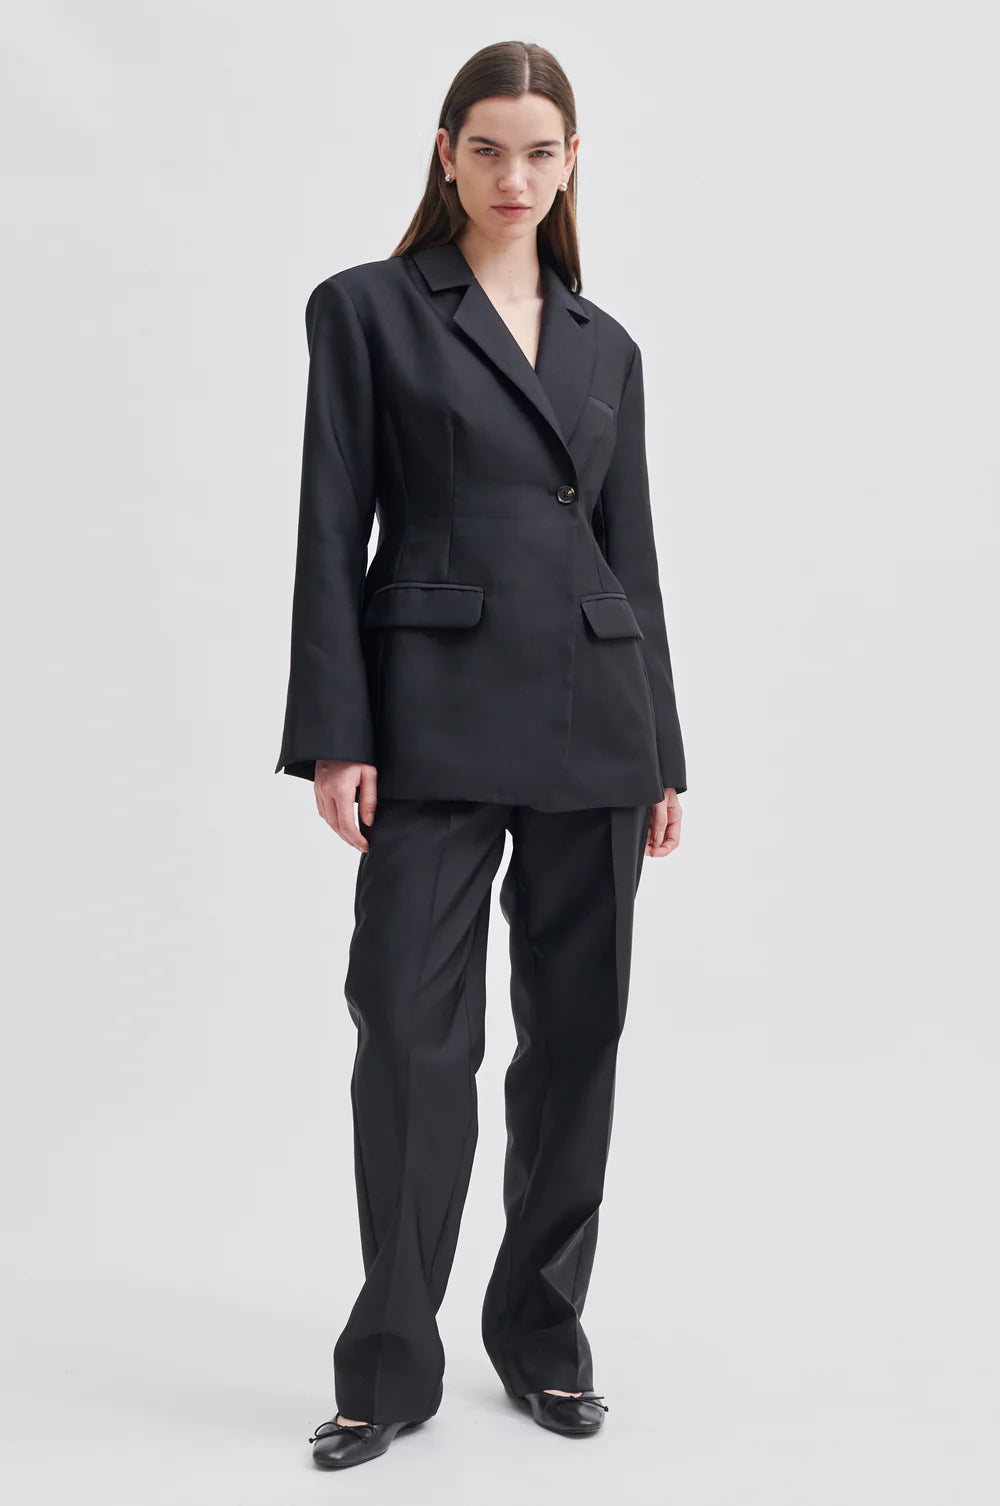 Elegance Suit Trs Black